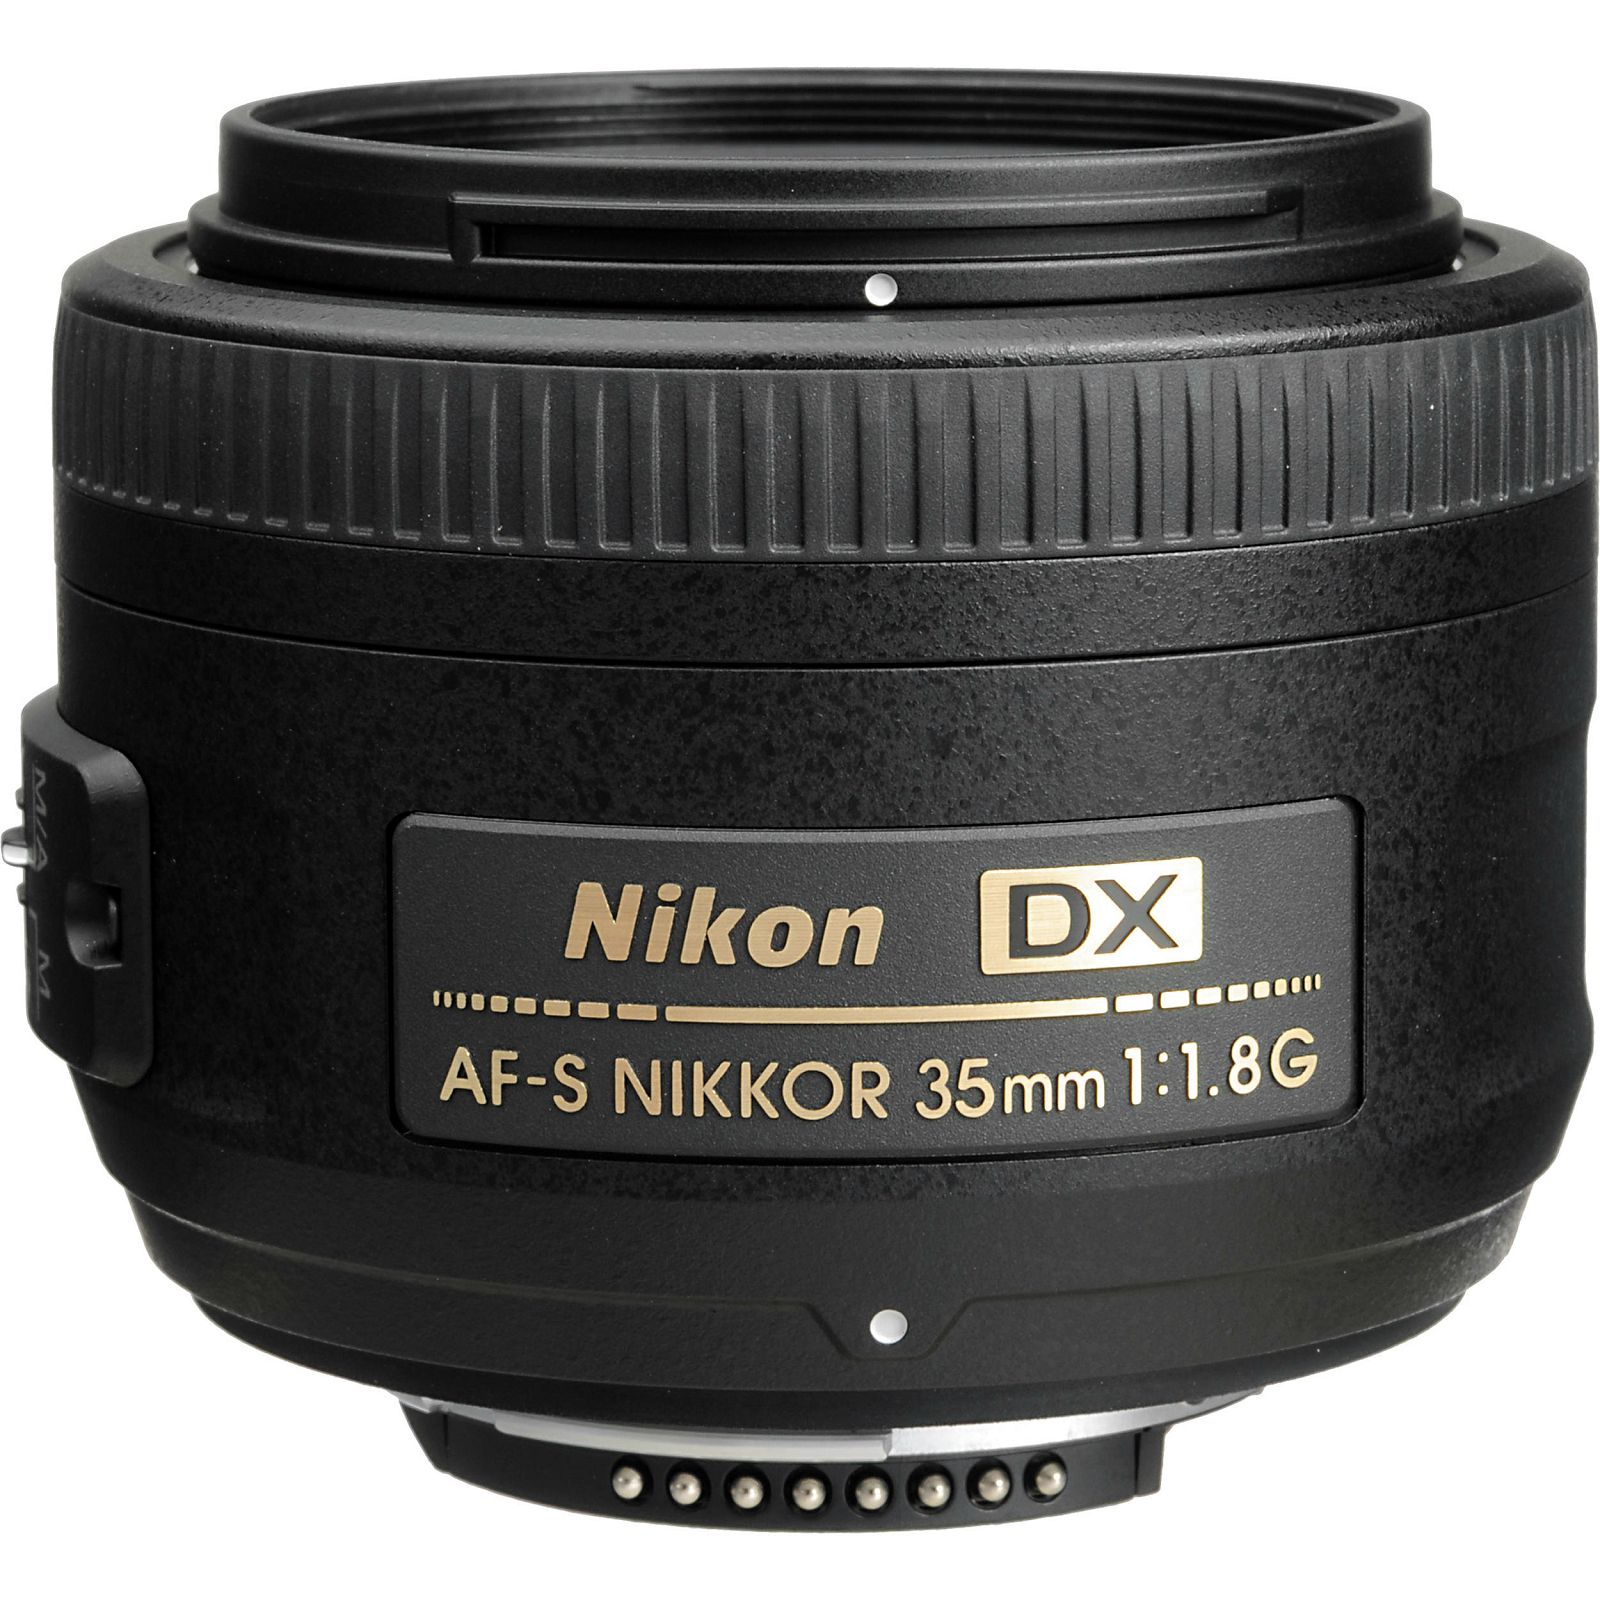 Nikon D3500 + AF-S 35mm f/1.8G DX KIT DSLR digitalni fotoaparat i objektiv Nikkor 35mm F1.8 (VBA550K007)